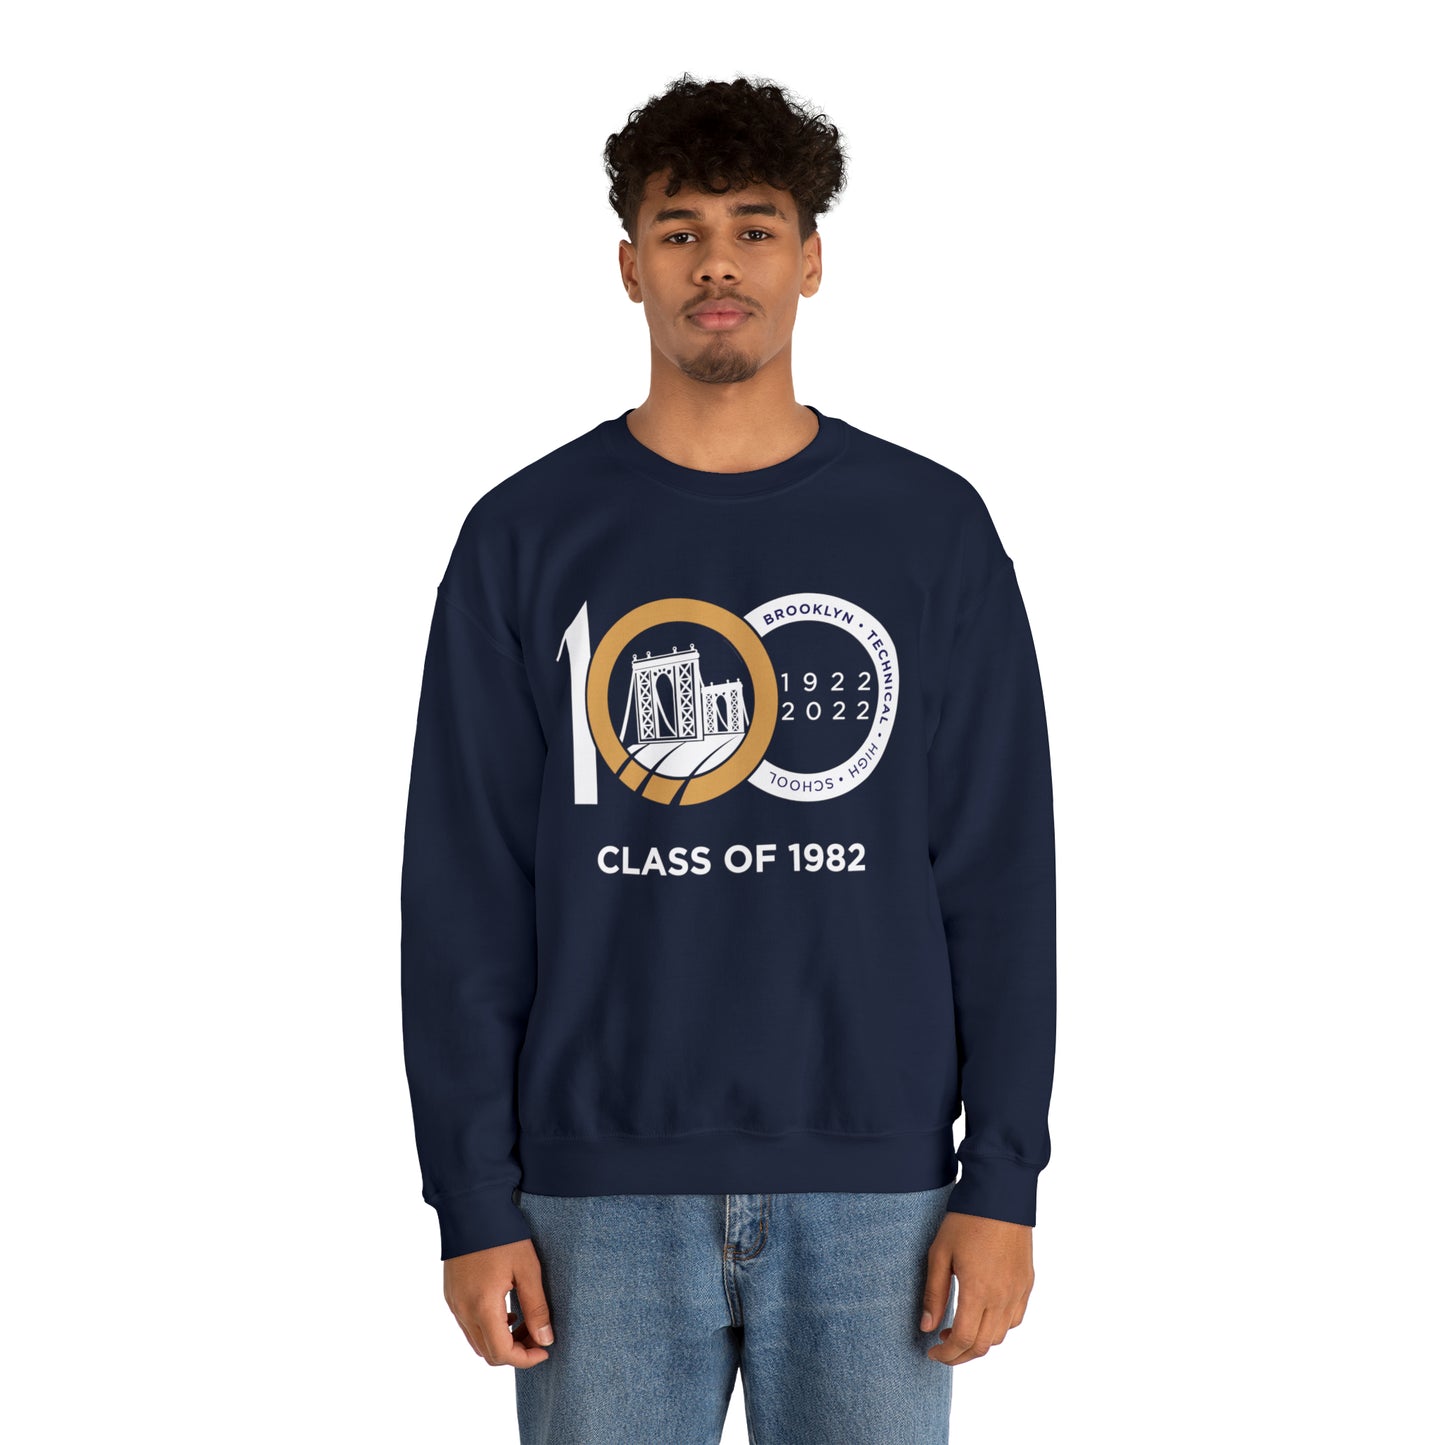 Centennial - Men's Heavy Blend Crewneck Sweatshirt - Class Of 1982